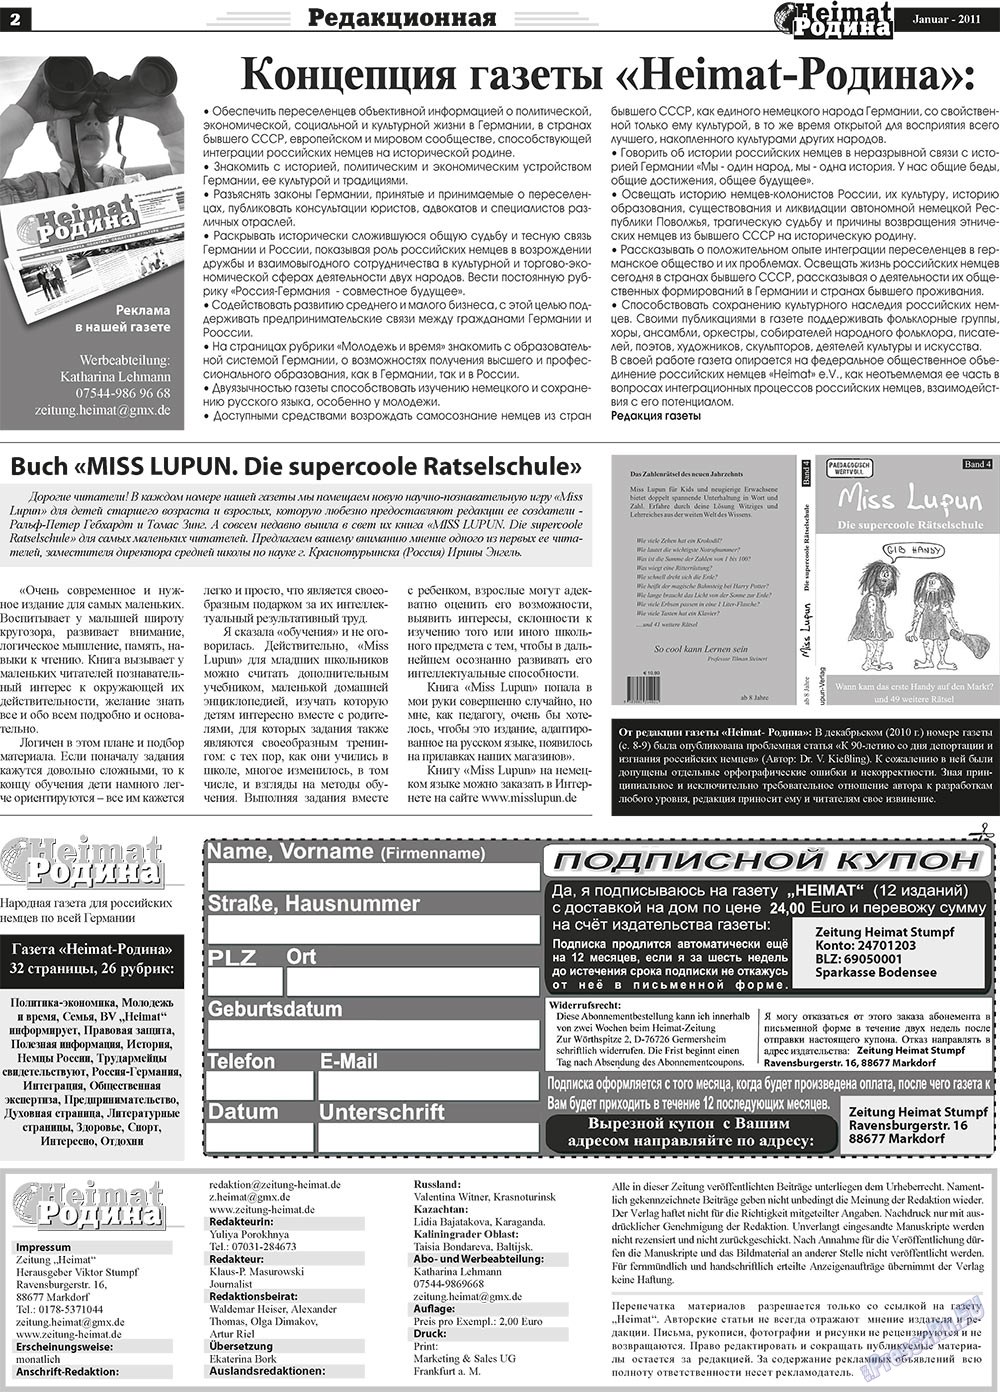 Heimat-Родина (газета). 2011 год, номер 1, стр. 2